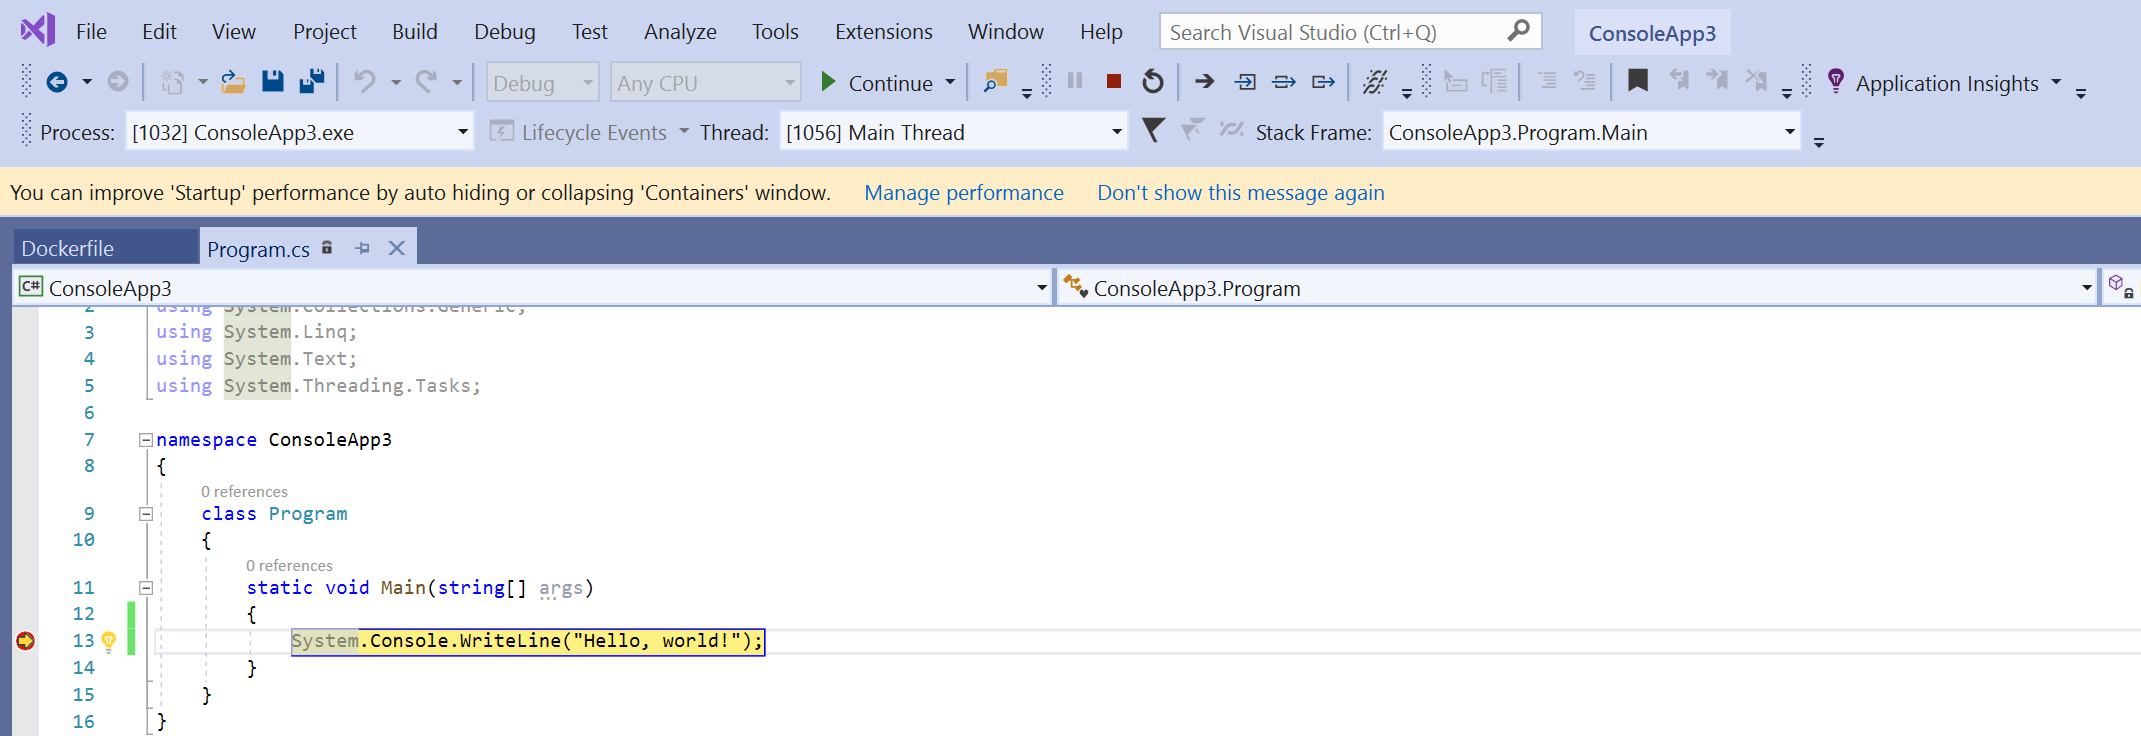 Снимок экрана: окно кода для Program.cs в Visual Studio, для которого точка останова установлена слева от строки кода, выделенной желтым цветом.